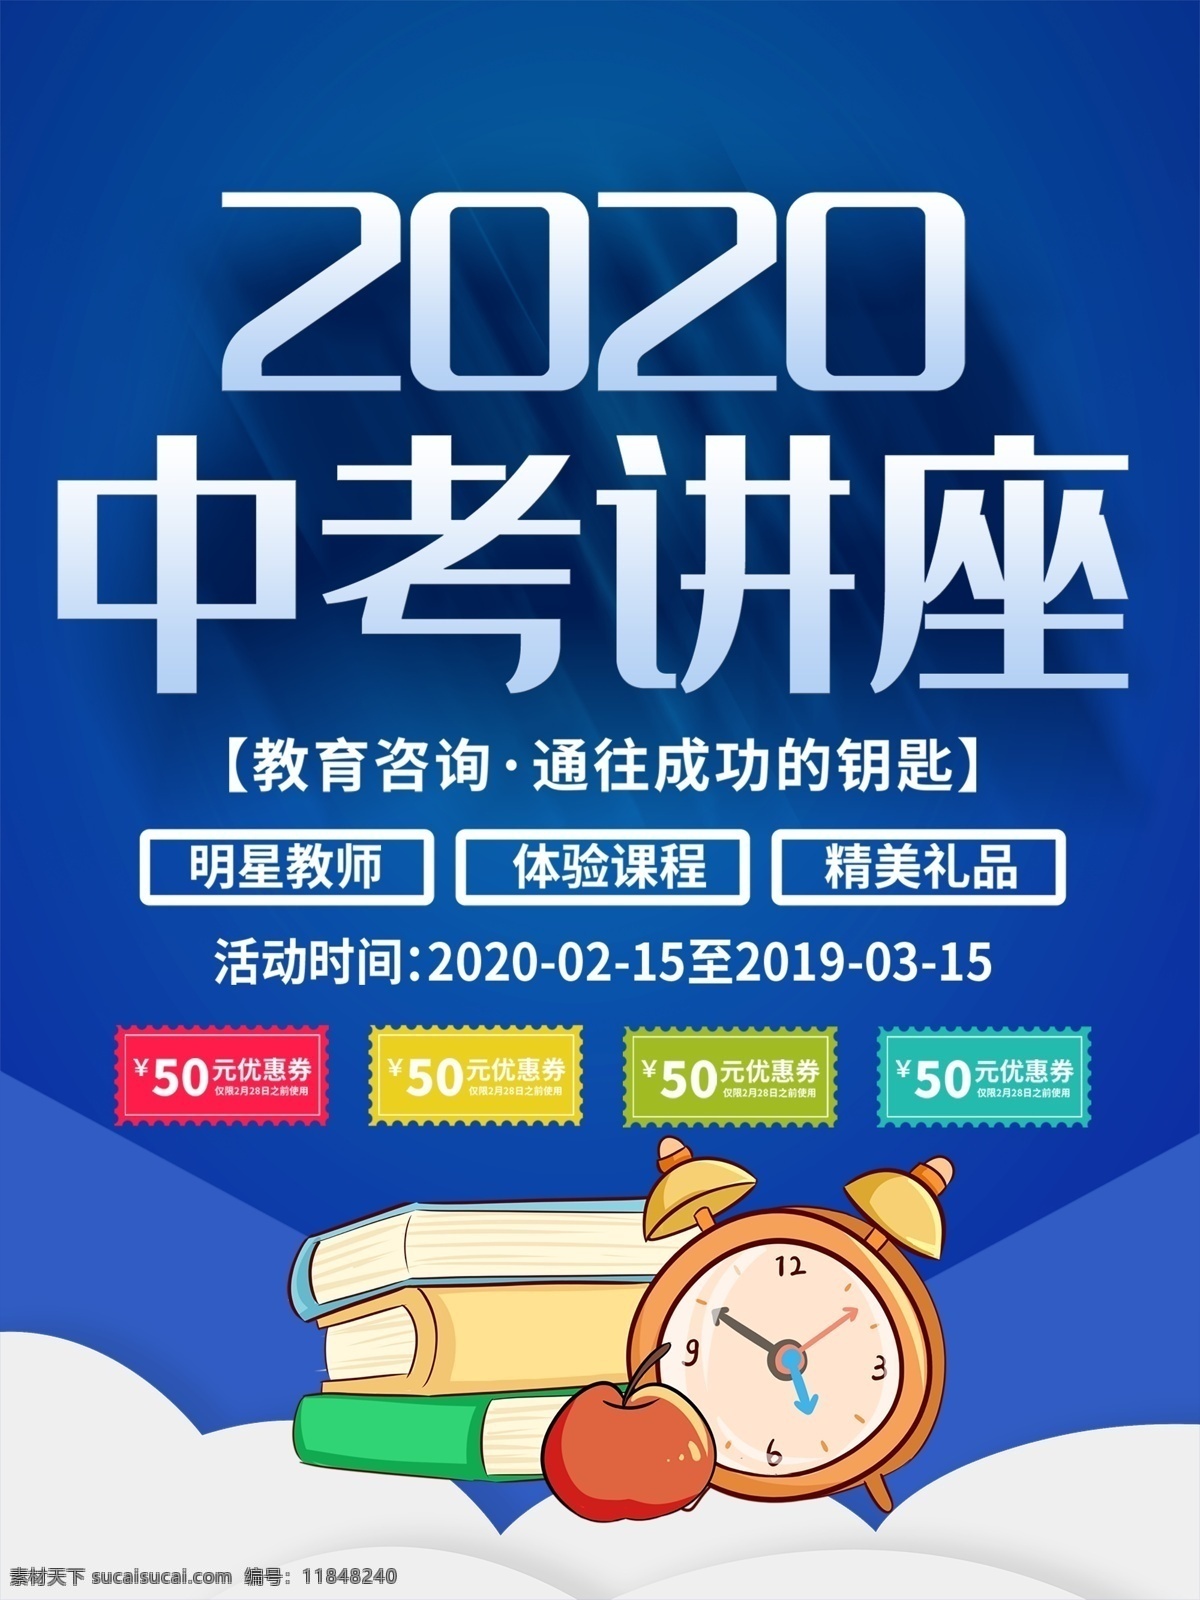 2020 年 中考 讲座海报 2020年 中考讲座 适用于中考 讲座海报设计 海报